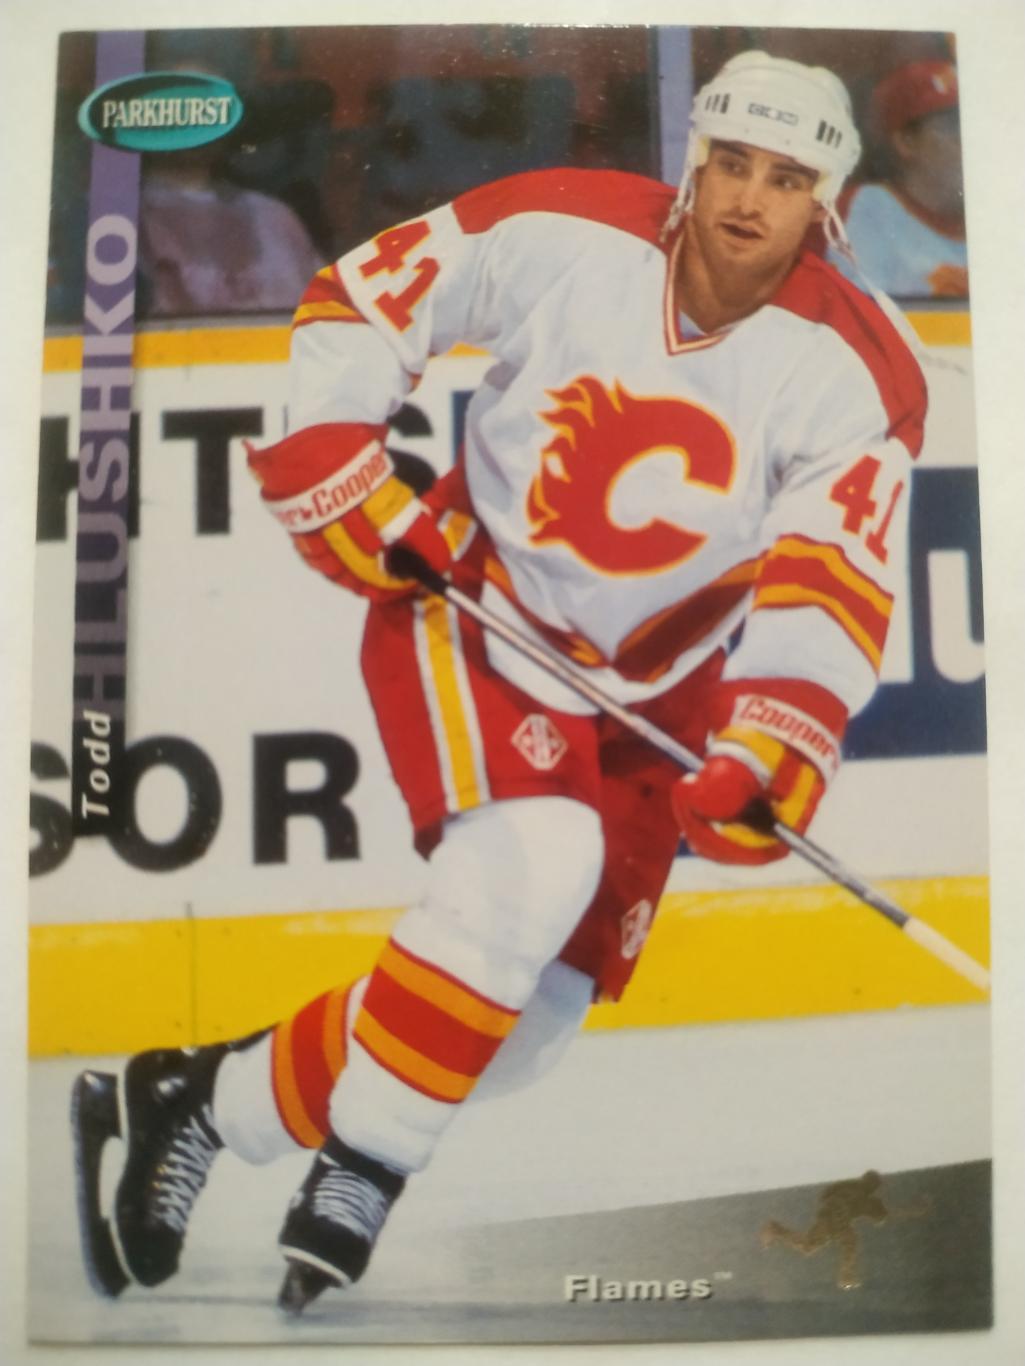 ХОККЕЙ КАРТОЧКА НХЛ PARKHURST 1994-95 NHL TODD HLUSHKO CALGARY FLAMES #SE25